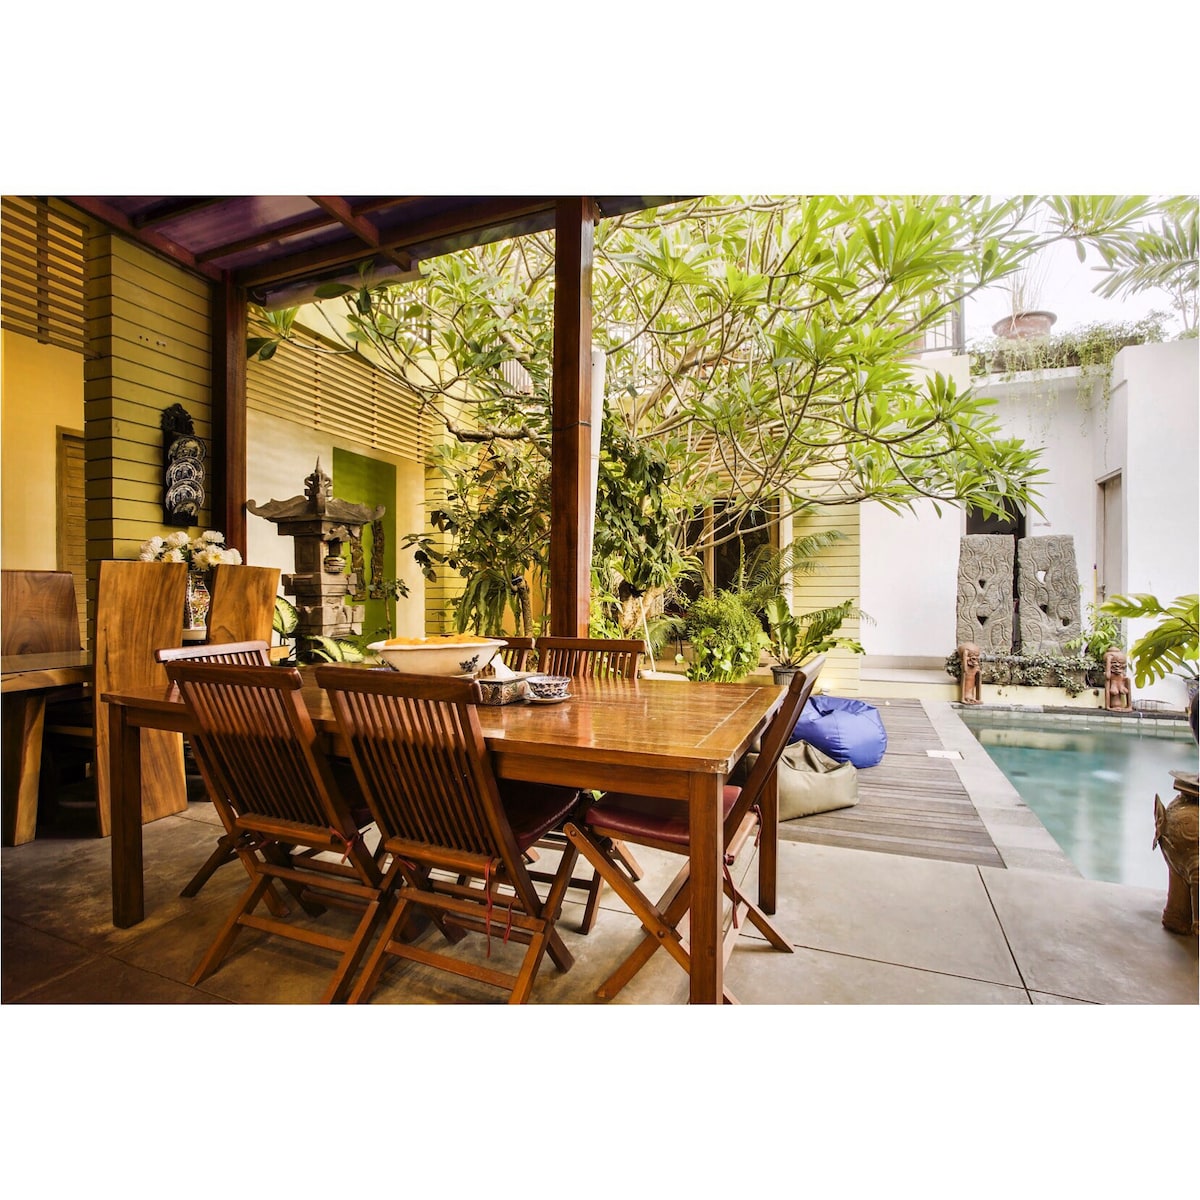 巴厘岛沙努尔舒适热带寄宿家庭